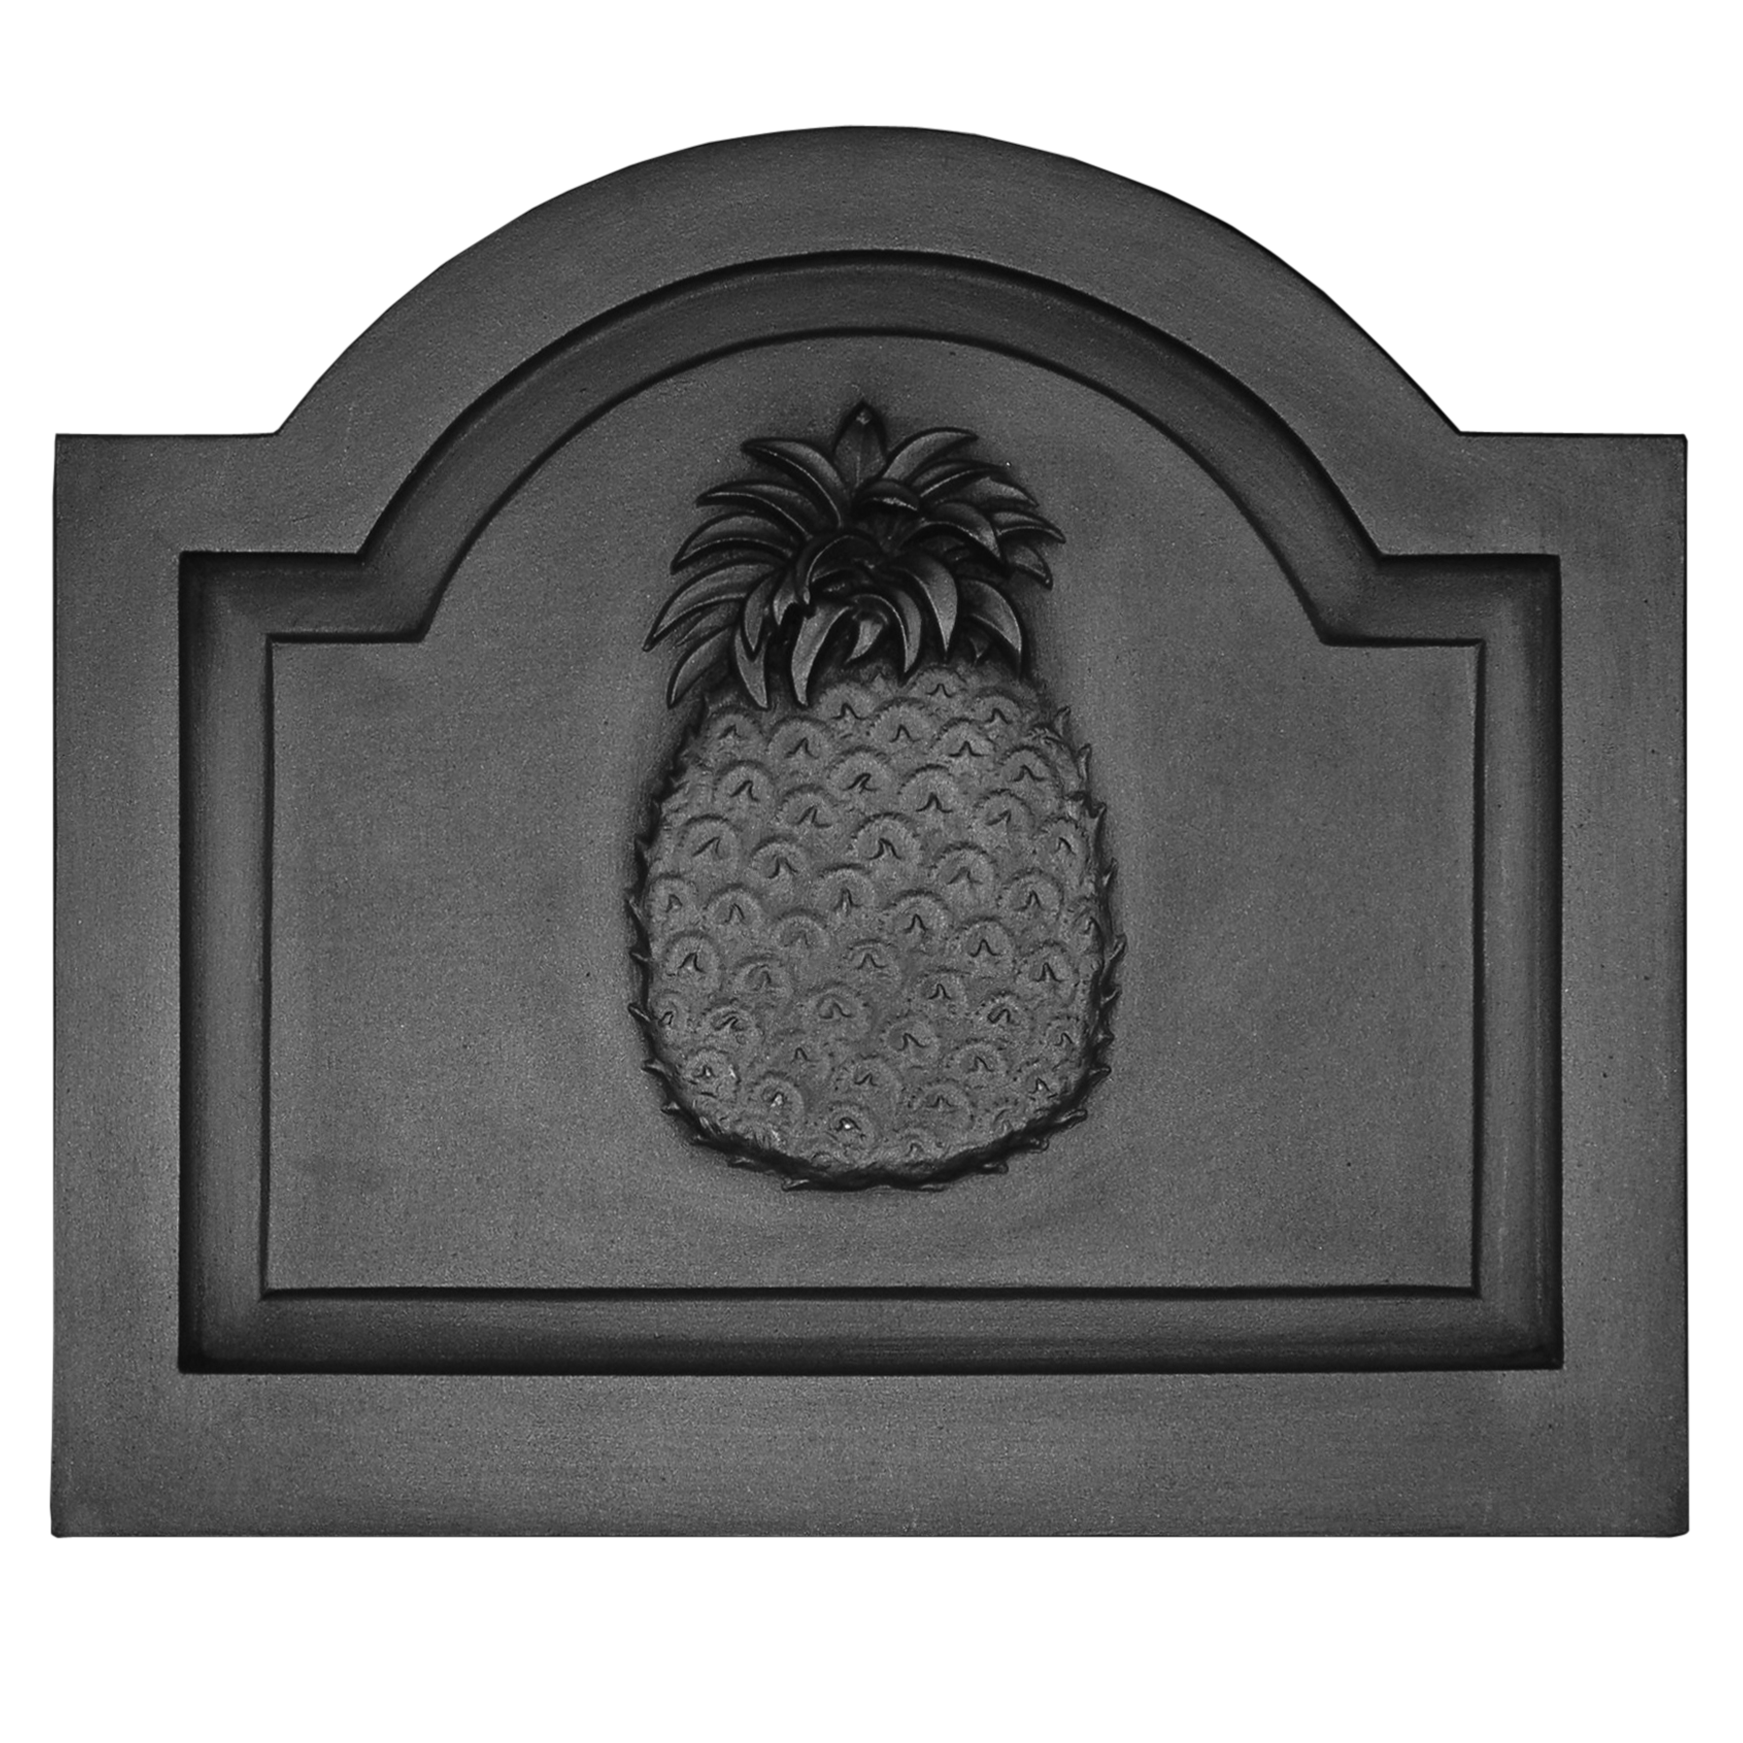 Pineapple on Large Raised Panel Fireback